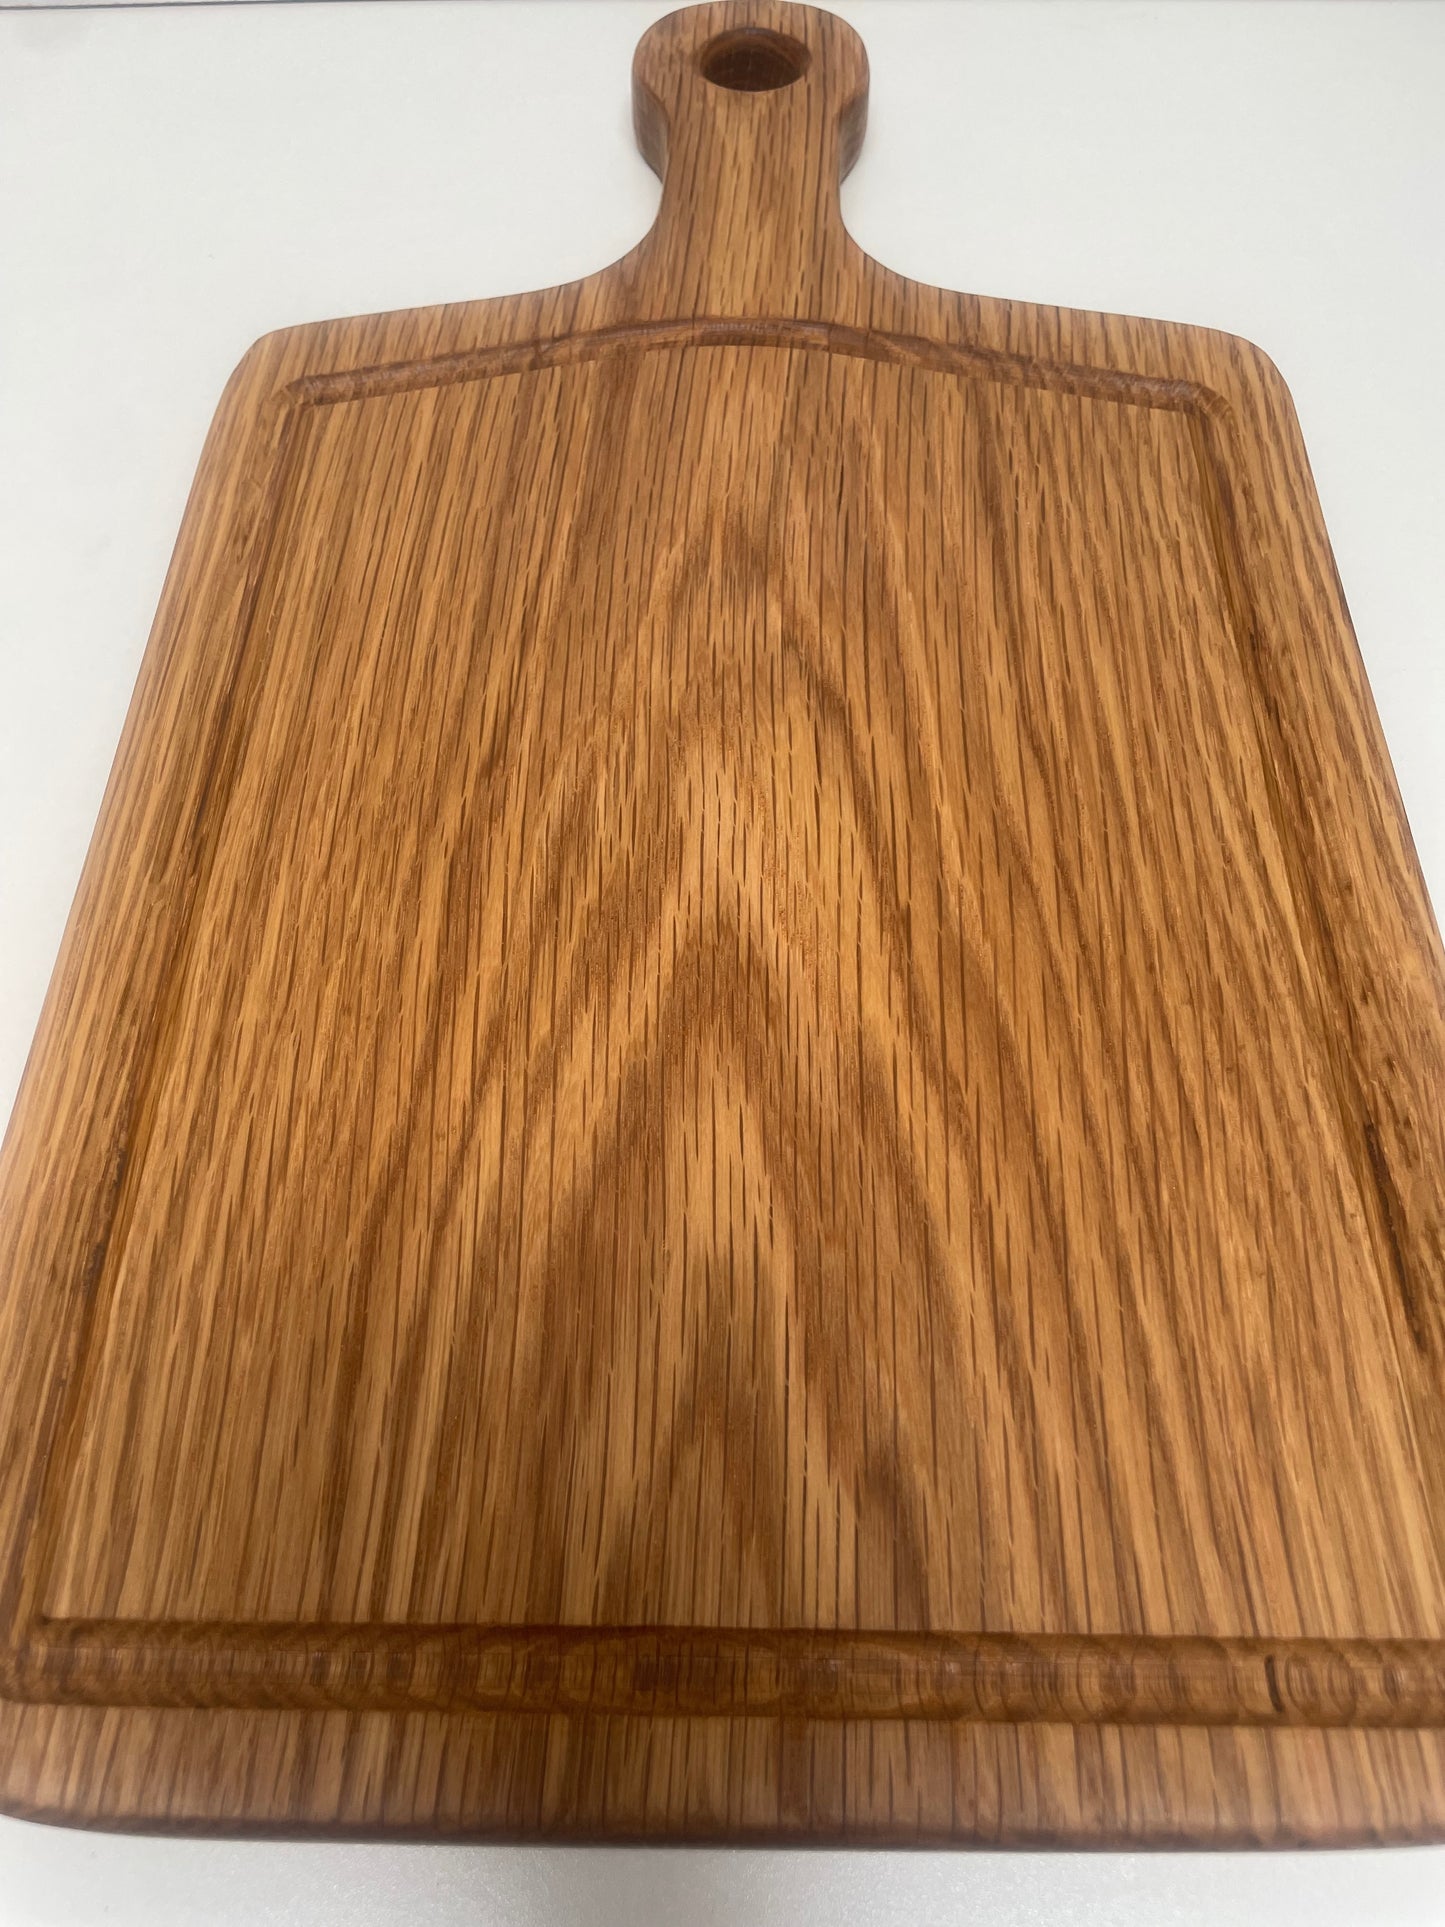 24H005 - Solid White Oak Handle Board w/Juice Groove